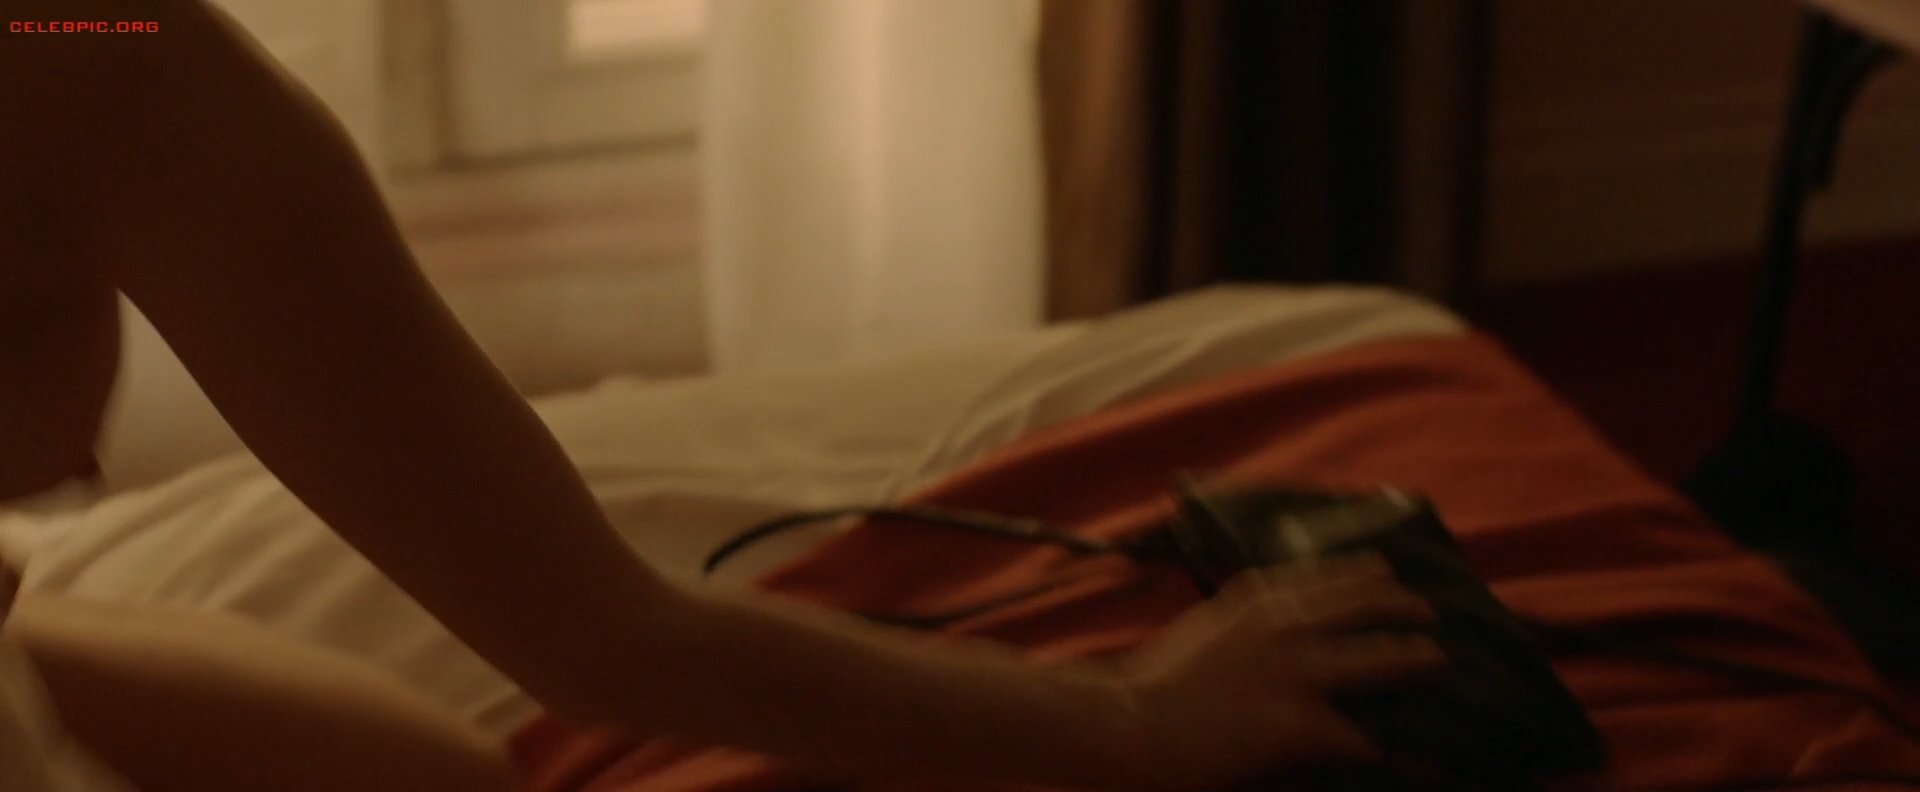 Gemma Arterton - The Escape 1080p (1) 1603.jpg